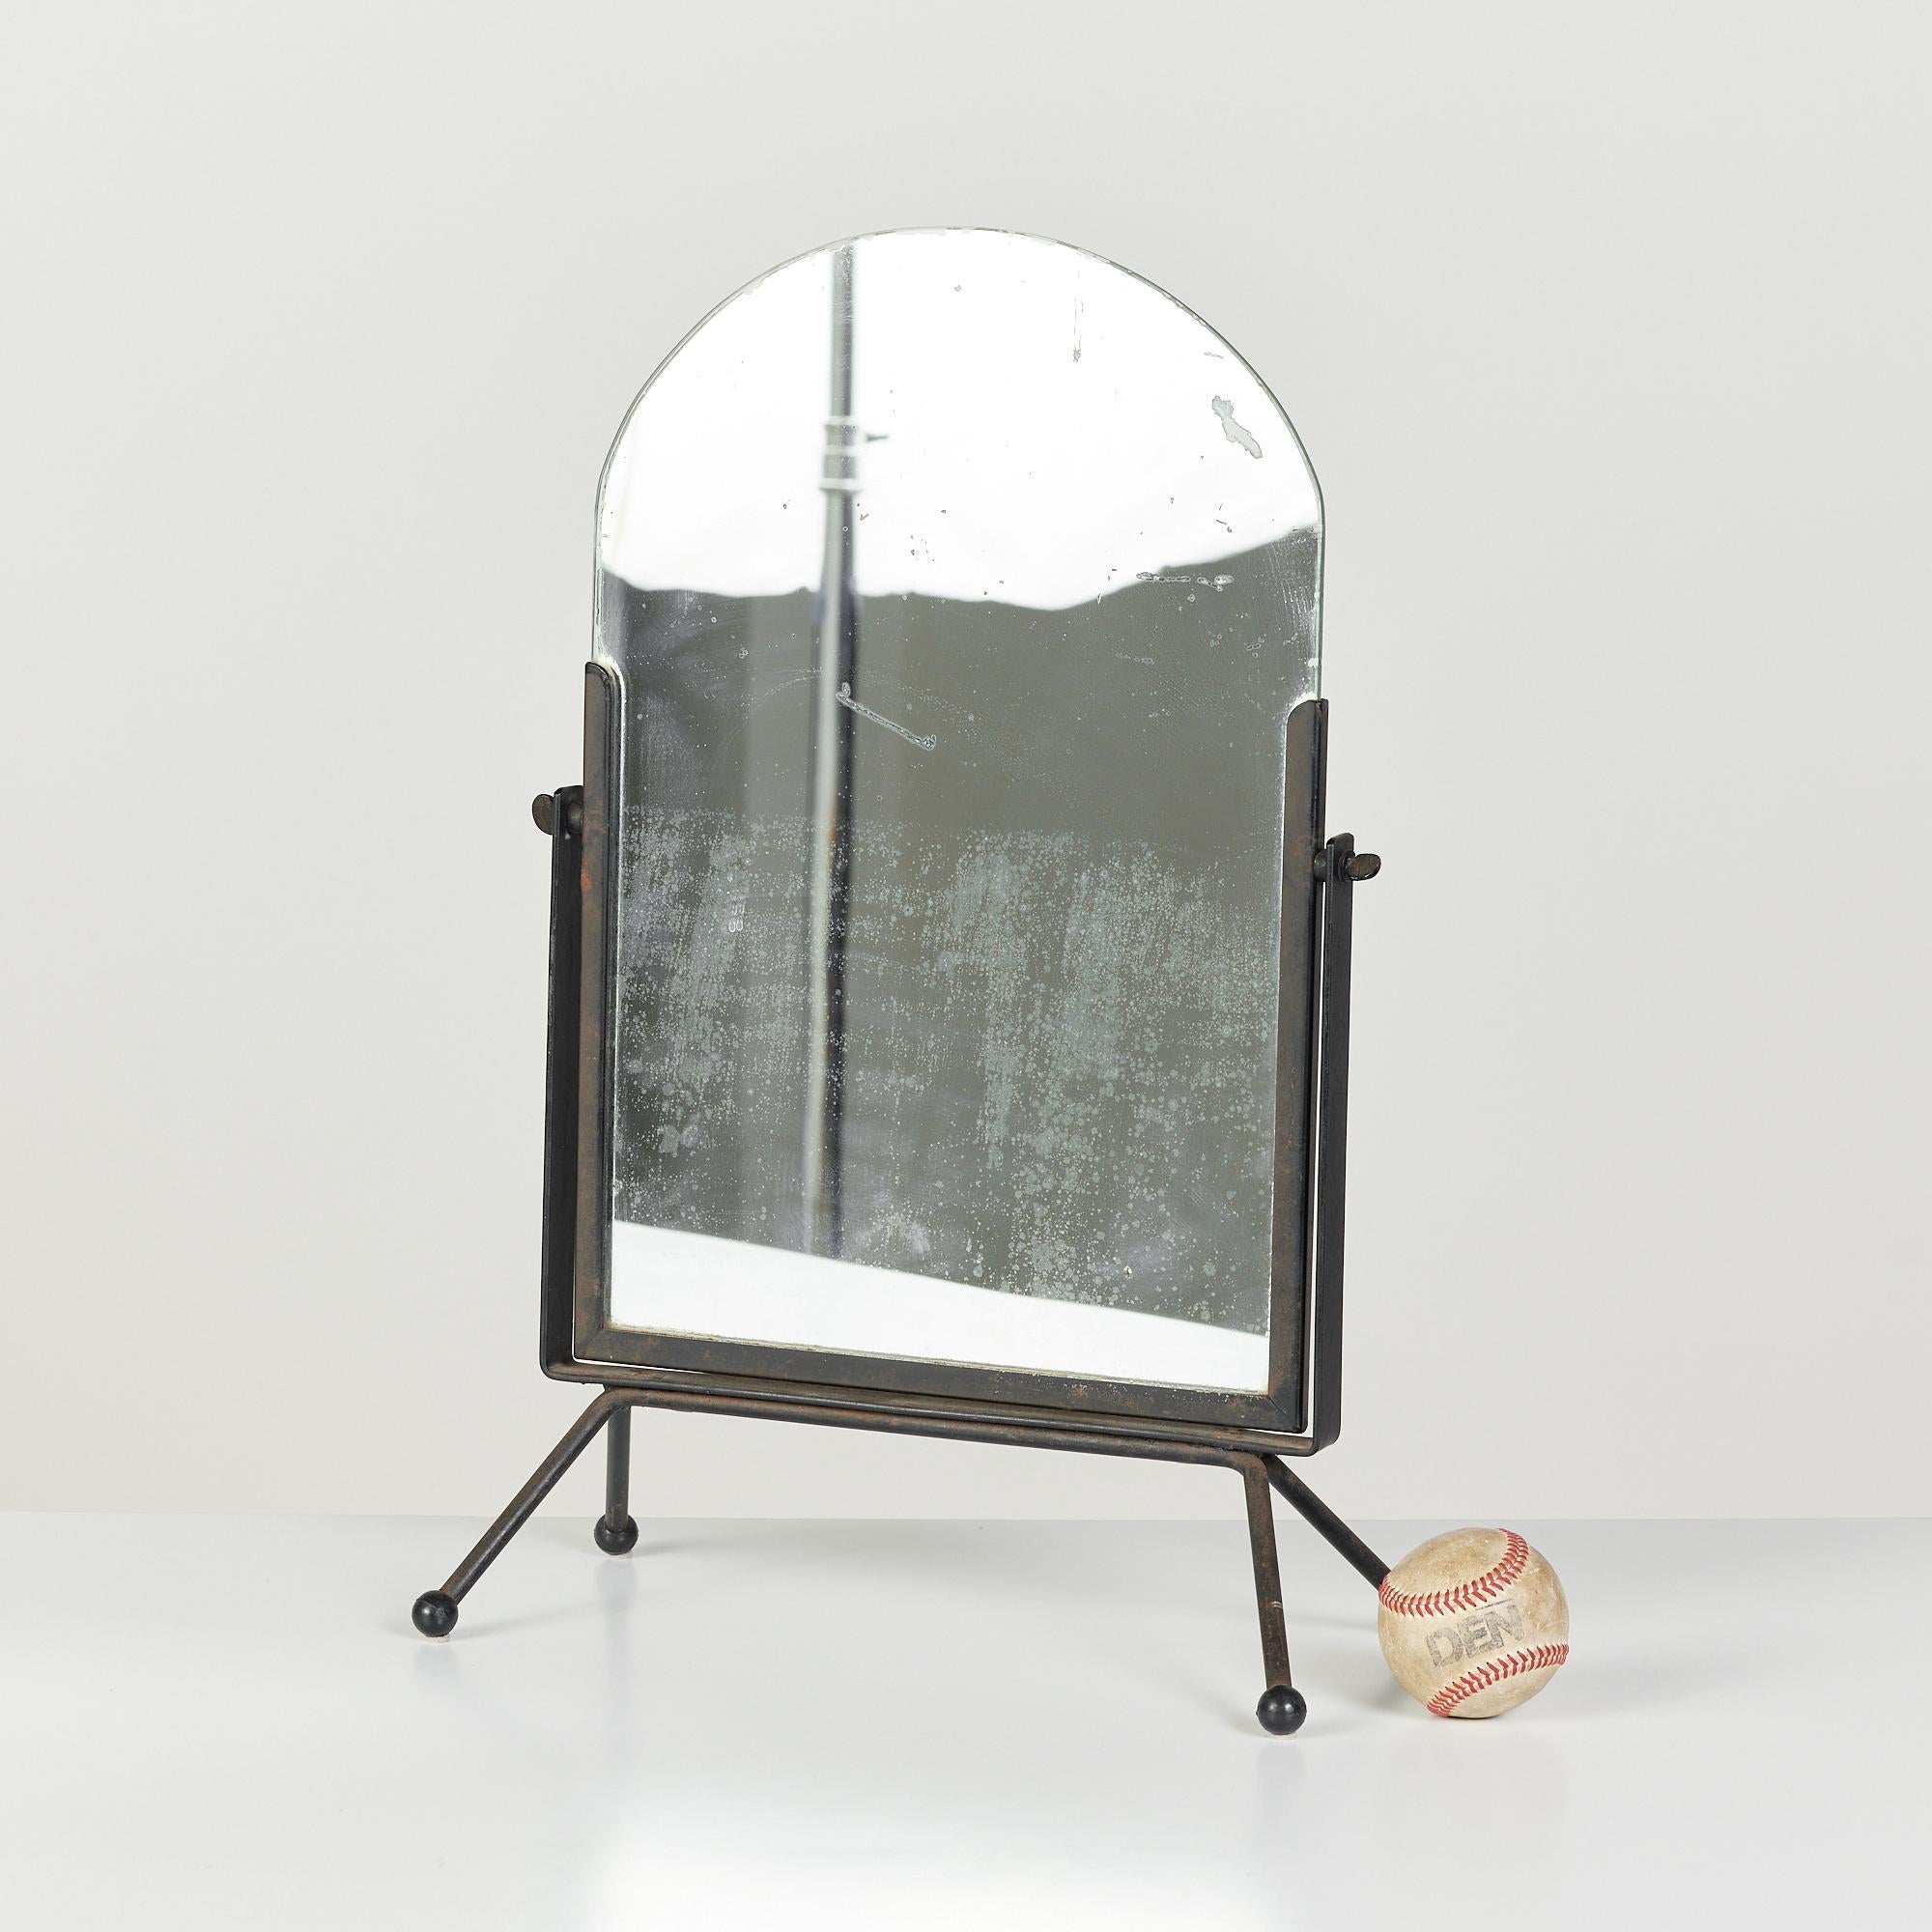 Ce miroir de courtoisie en fer présente une pièce de verre incurvée insérée dans un cadre en fer. Le miroir est placé dans un cadre pivotant pour ajuster votre angle et repose sur quatre pieds en fer évasés avec des pieds en boule.

Dimensions :